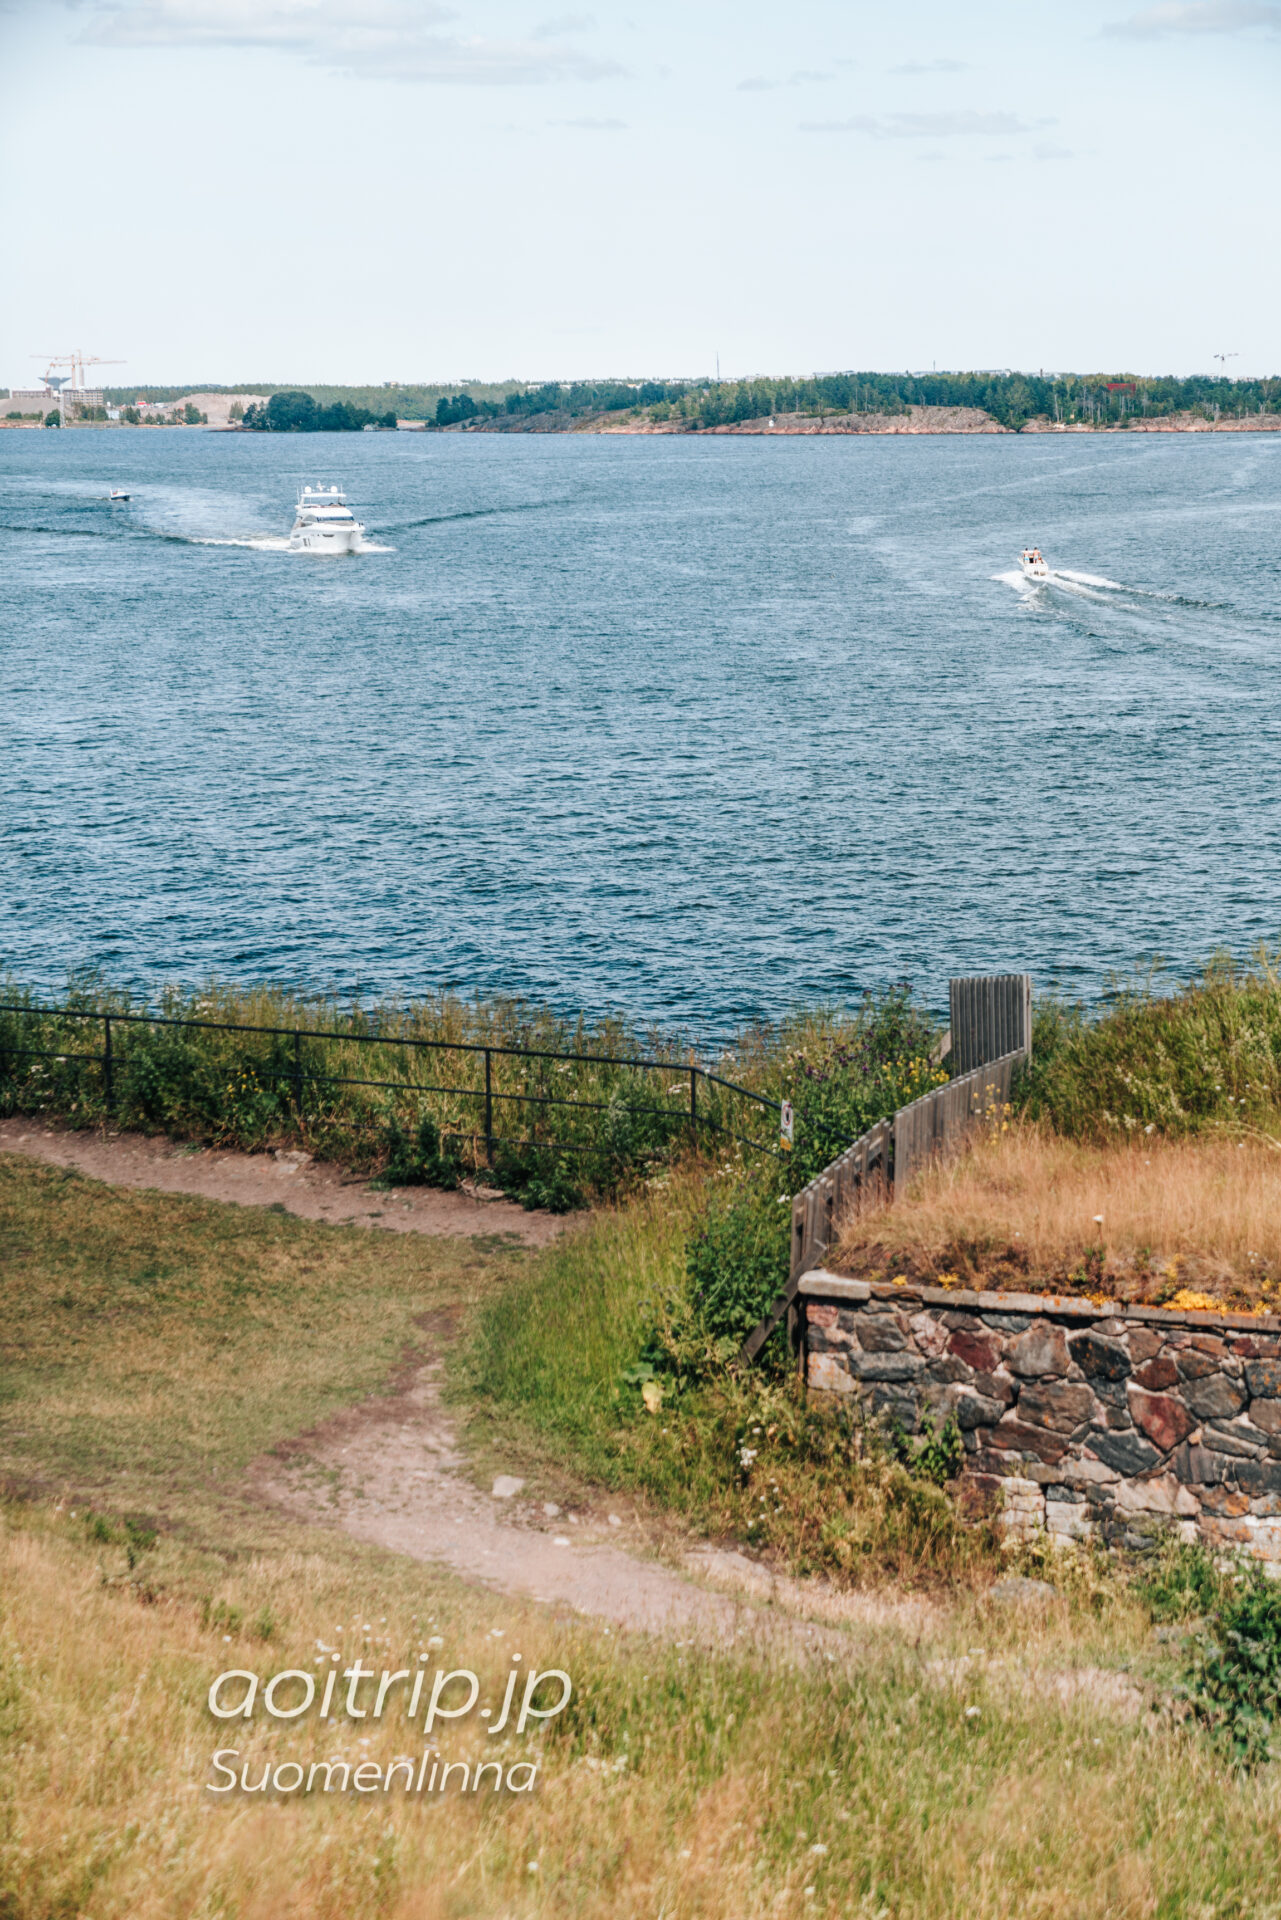 スオメンリンナの要塞 Suomenlinna